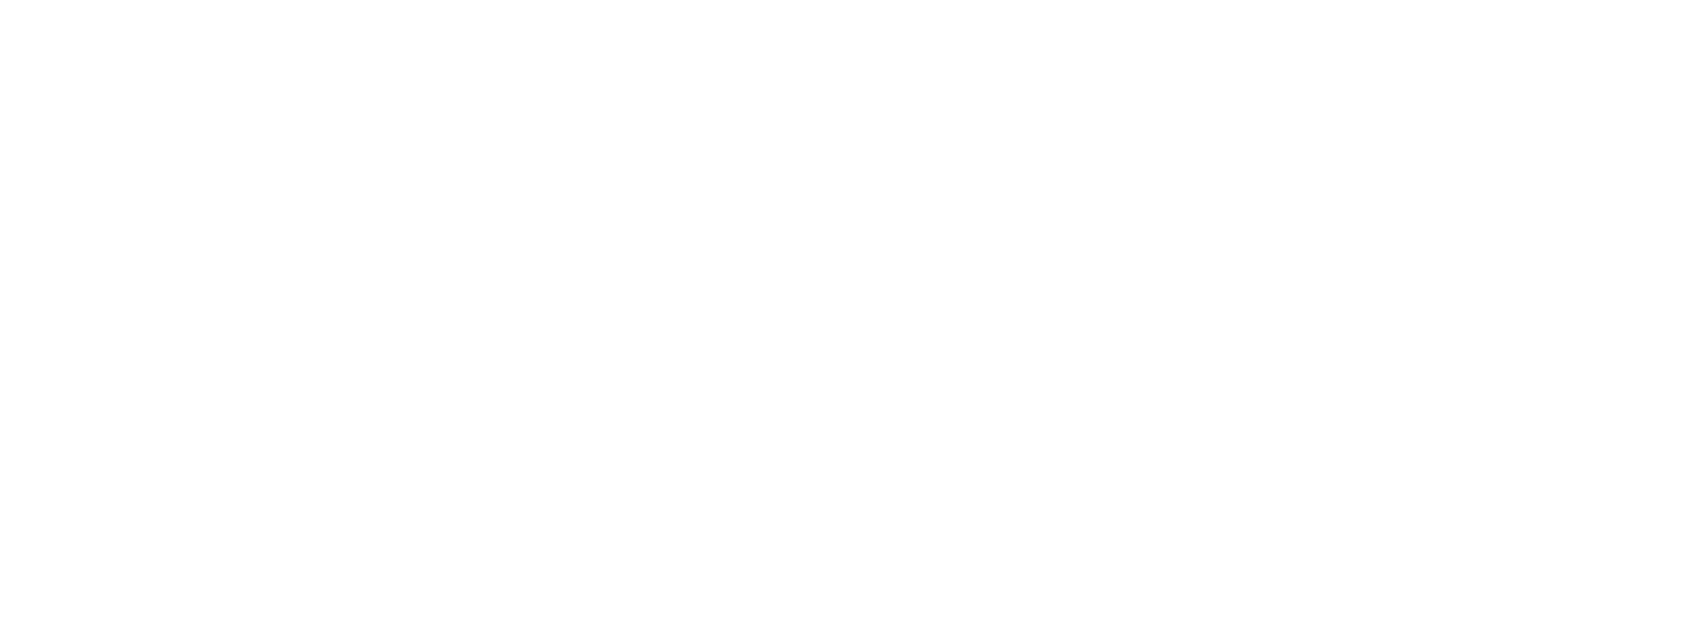 Surfrider Foundation Logo Hilo PNG image